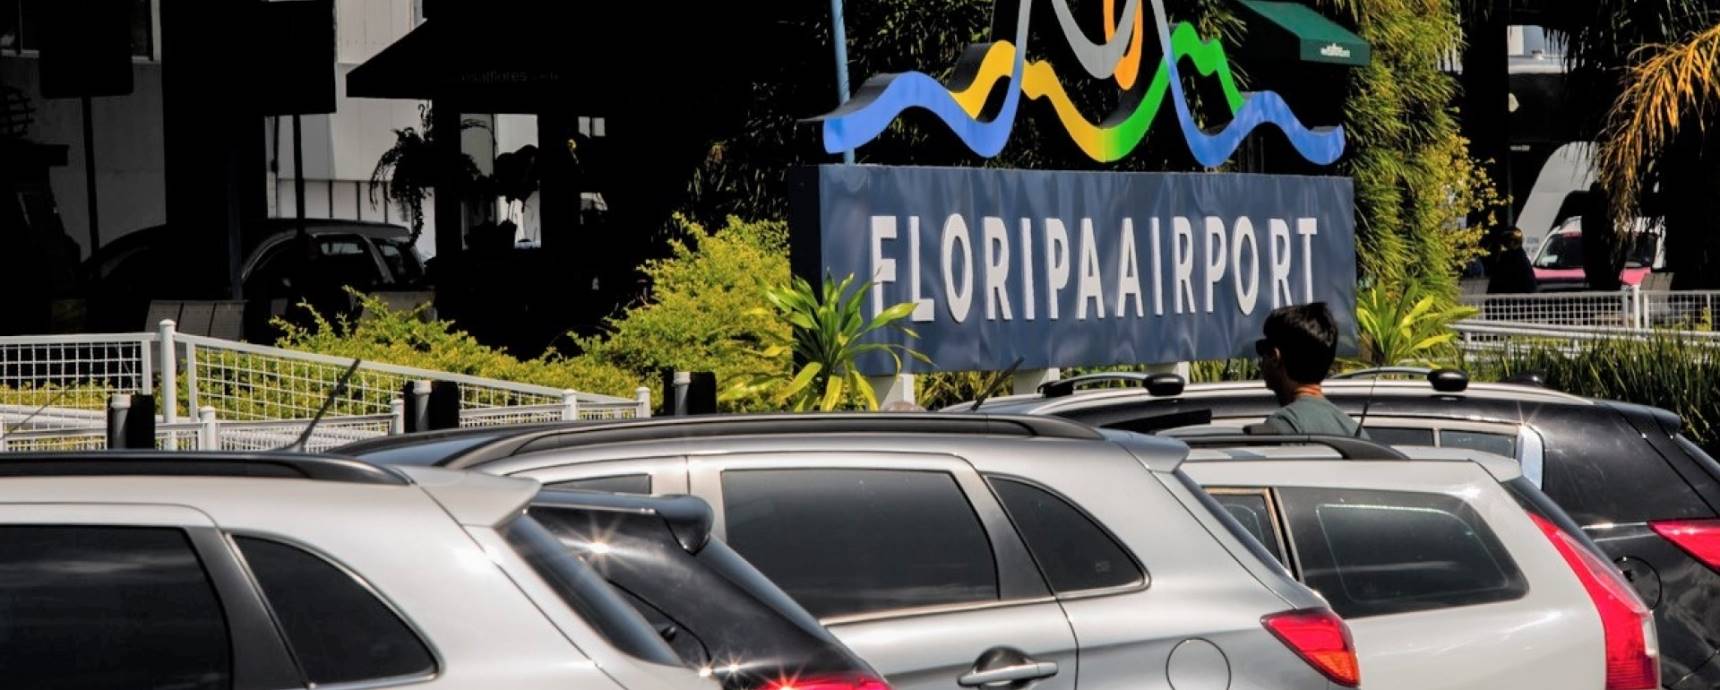 Estacionamento Floripa Airport: melhor custo-benefício da região para a sua viagem